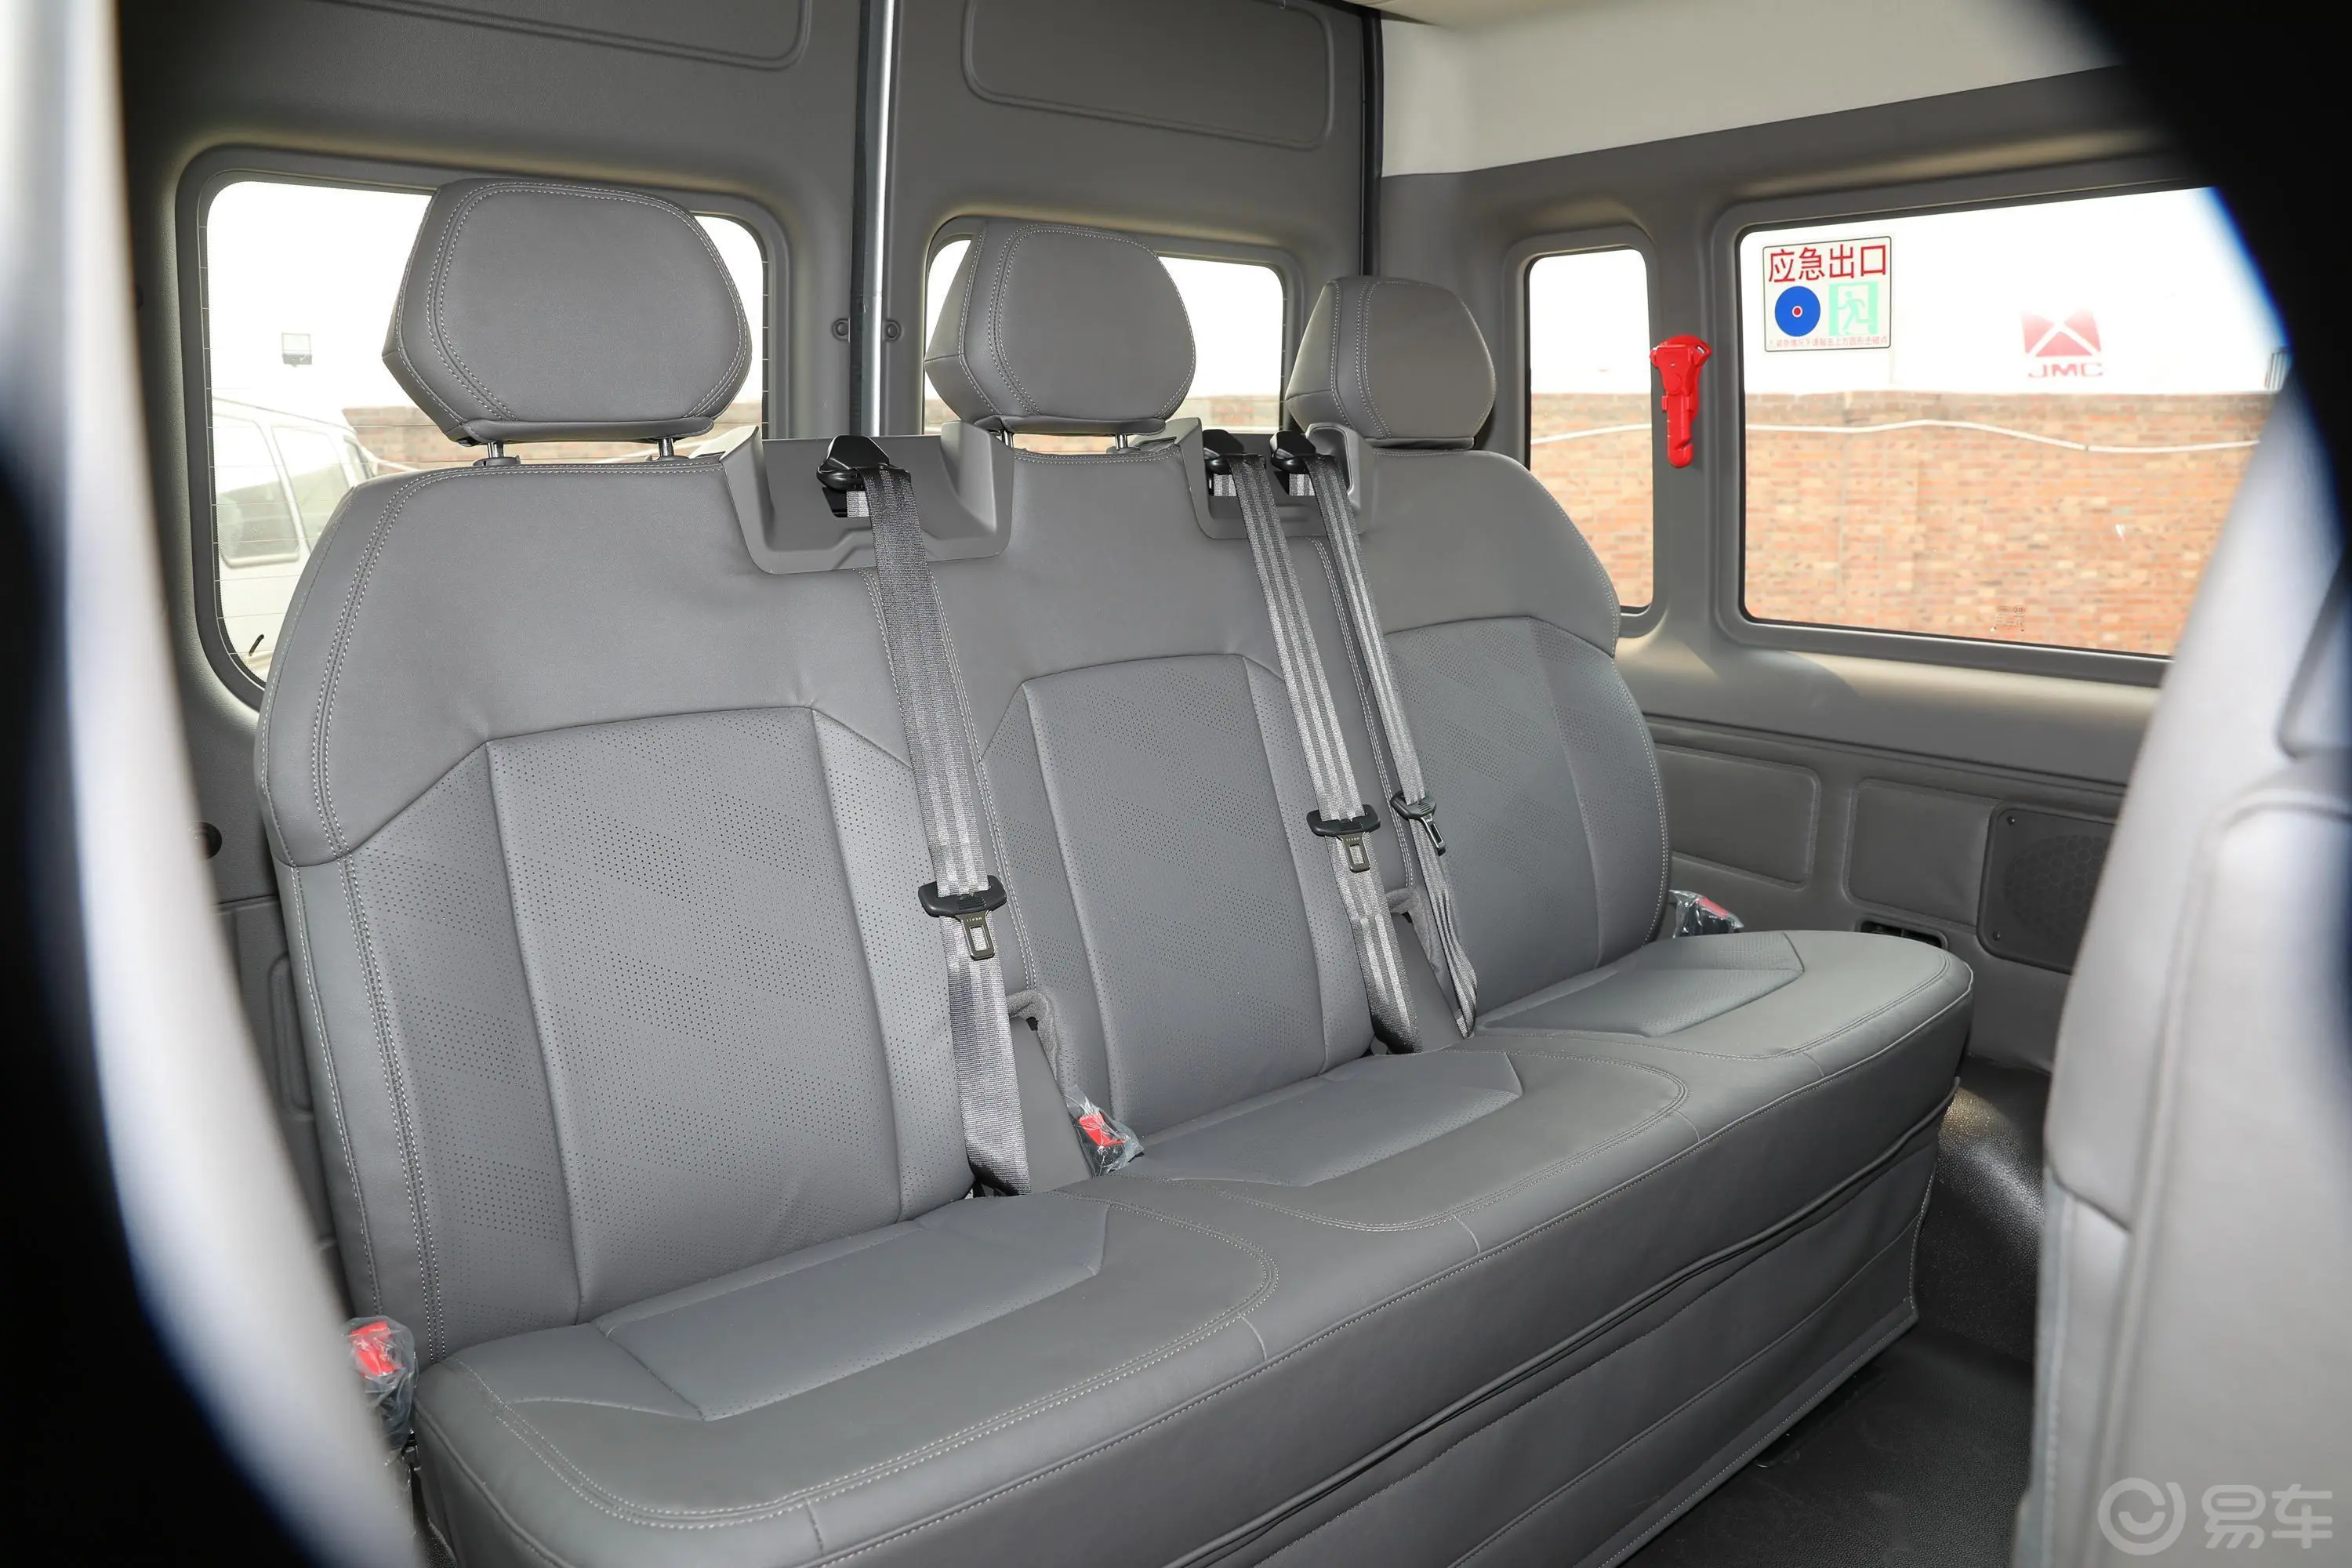 新世代全顺Pro 2.2T AMT 短轴中顶 豪华型客车 7座 柴油 国VI第三排座椅